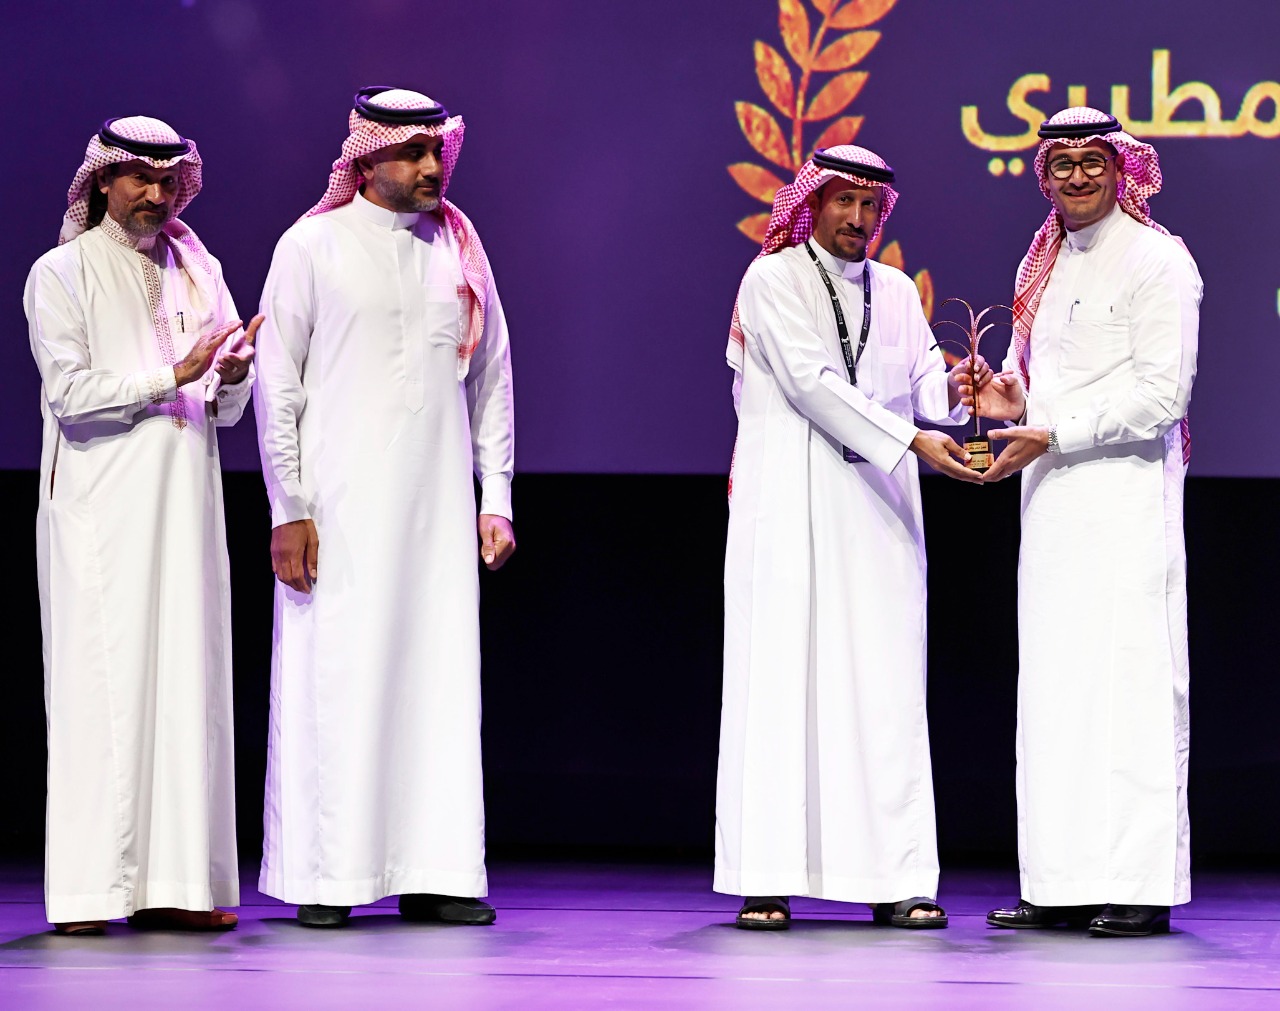 يختتم مهرجان الفيلم السعودي بسجادة حمراء وجوائز النخلة الذهبية